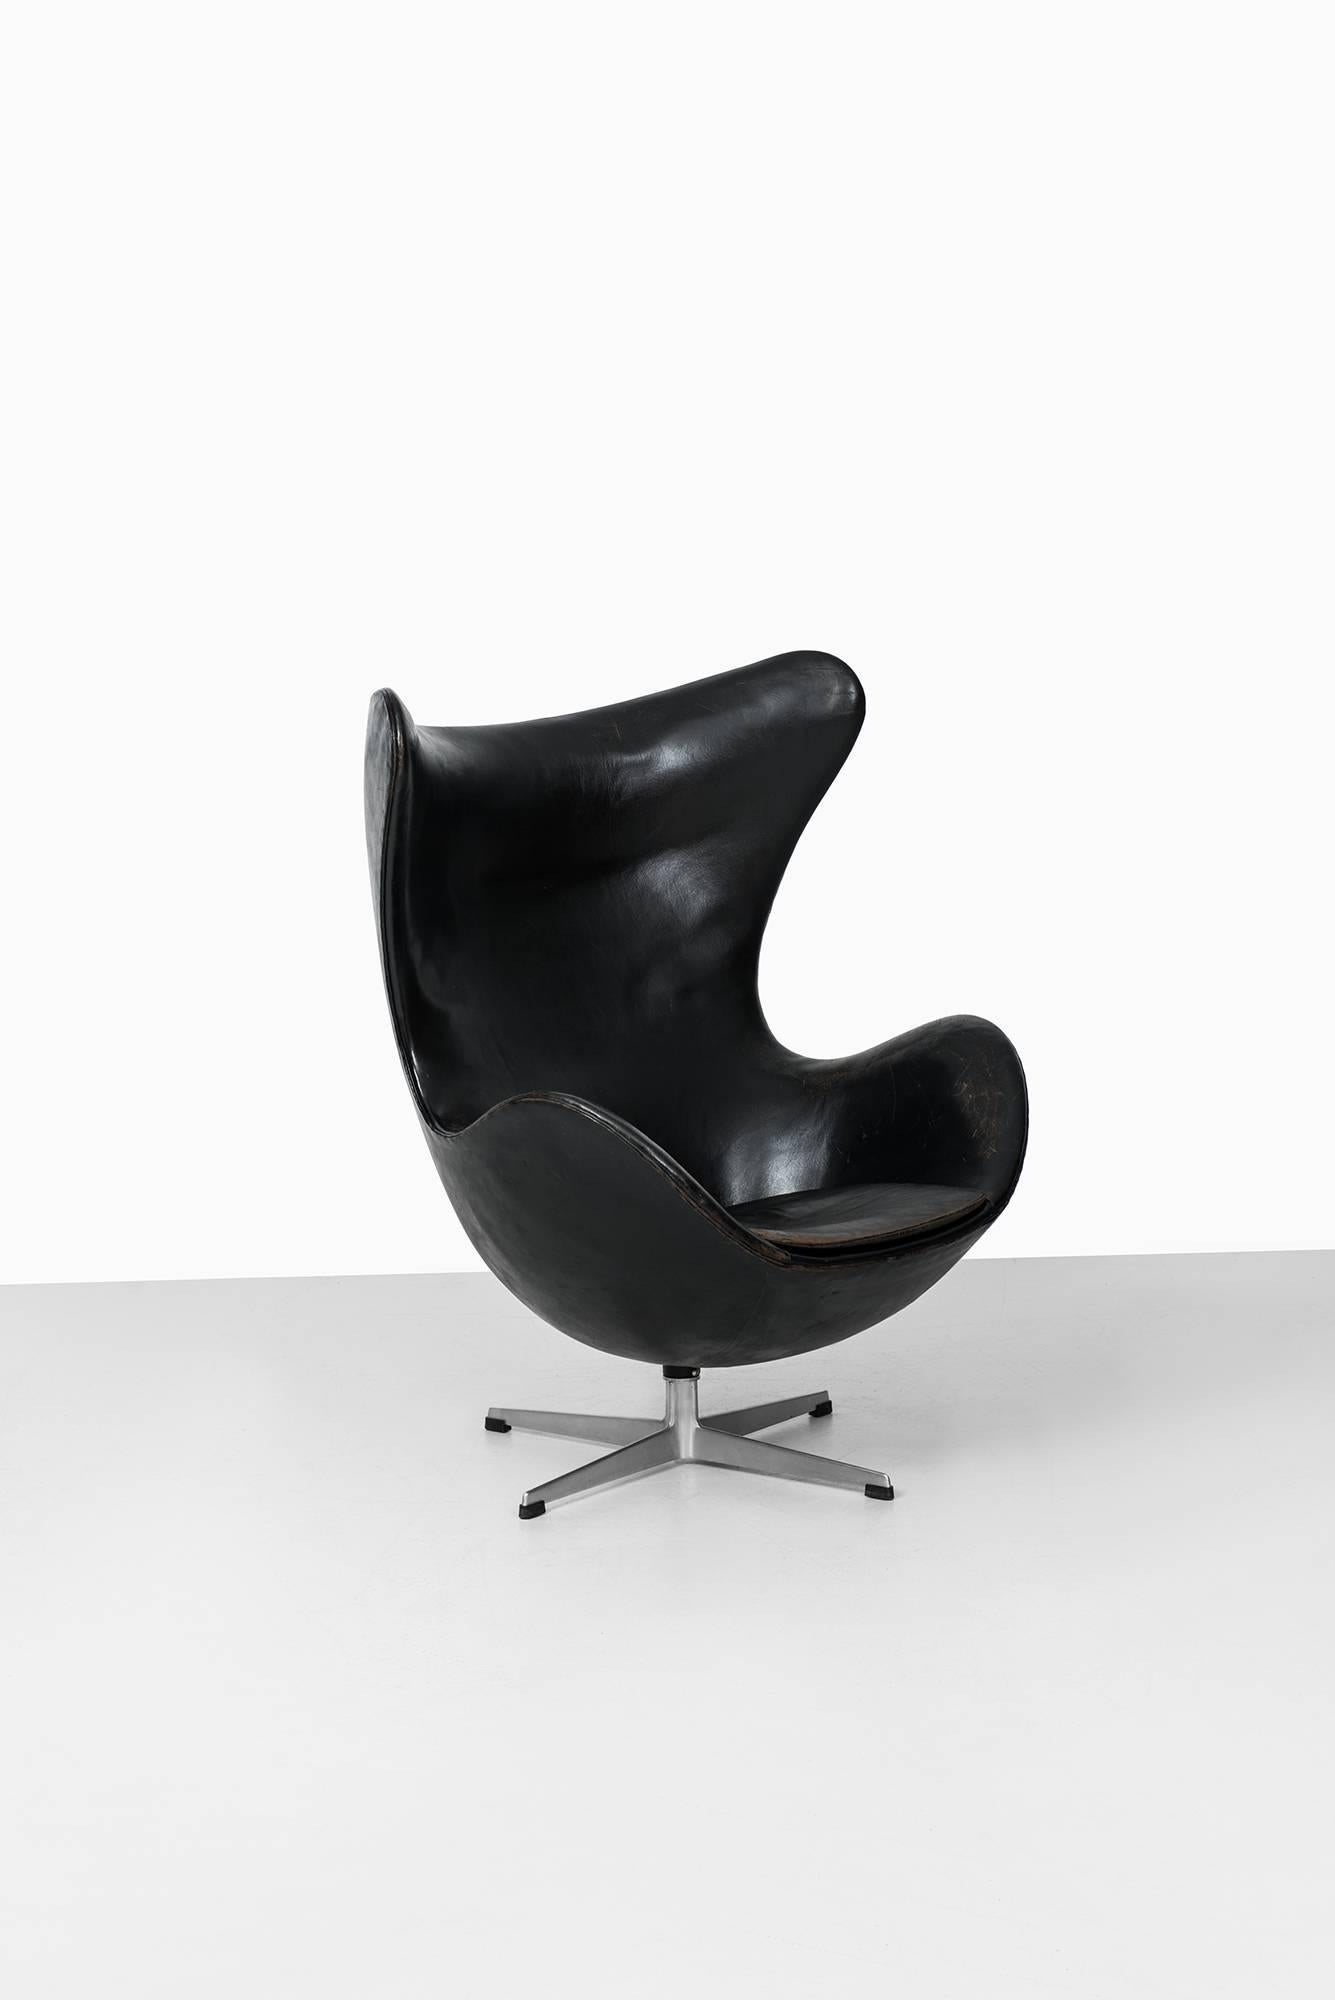 Mid-20th Century Arne Jacobsen Egg Chair Model 3316 by Fritz Hansen in Denmark